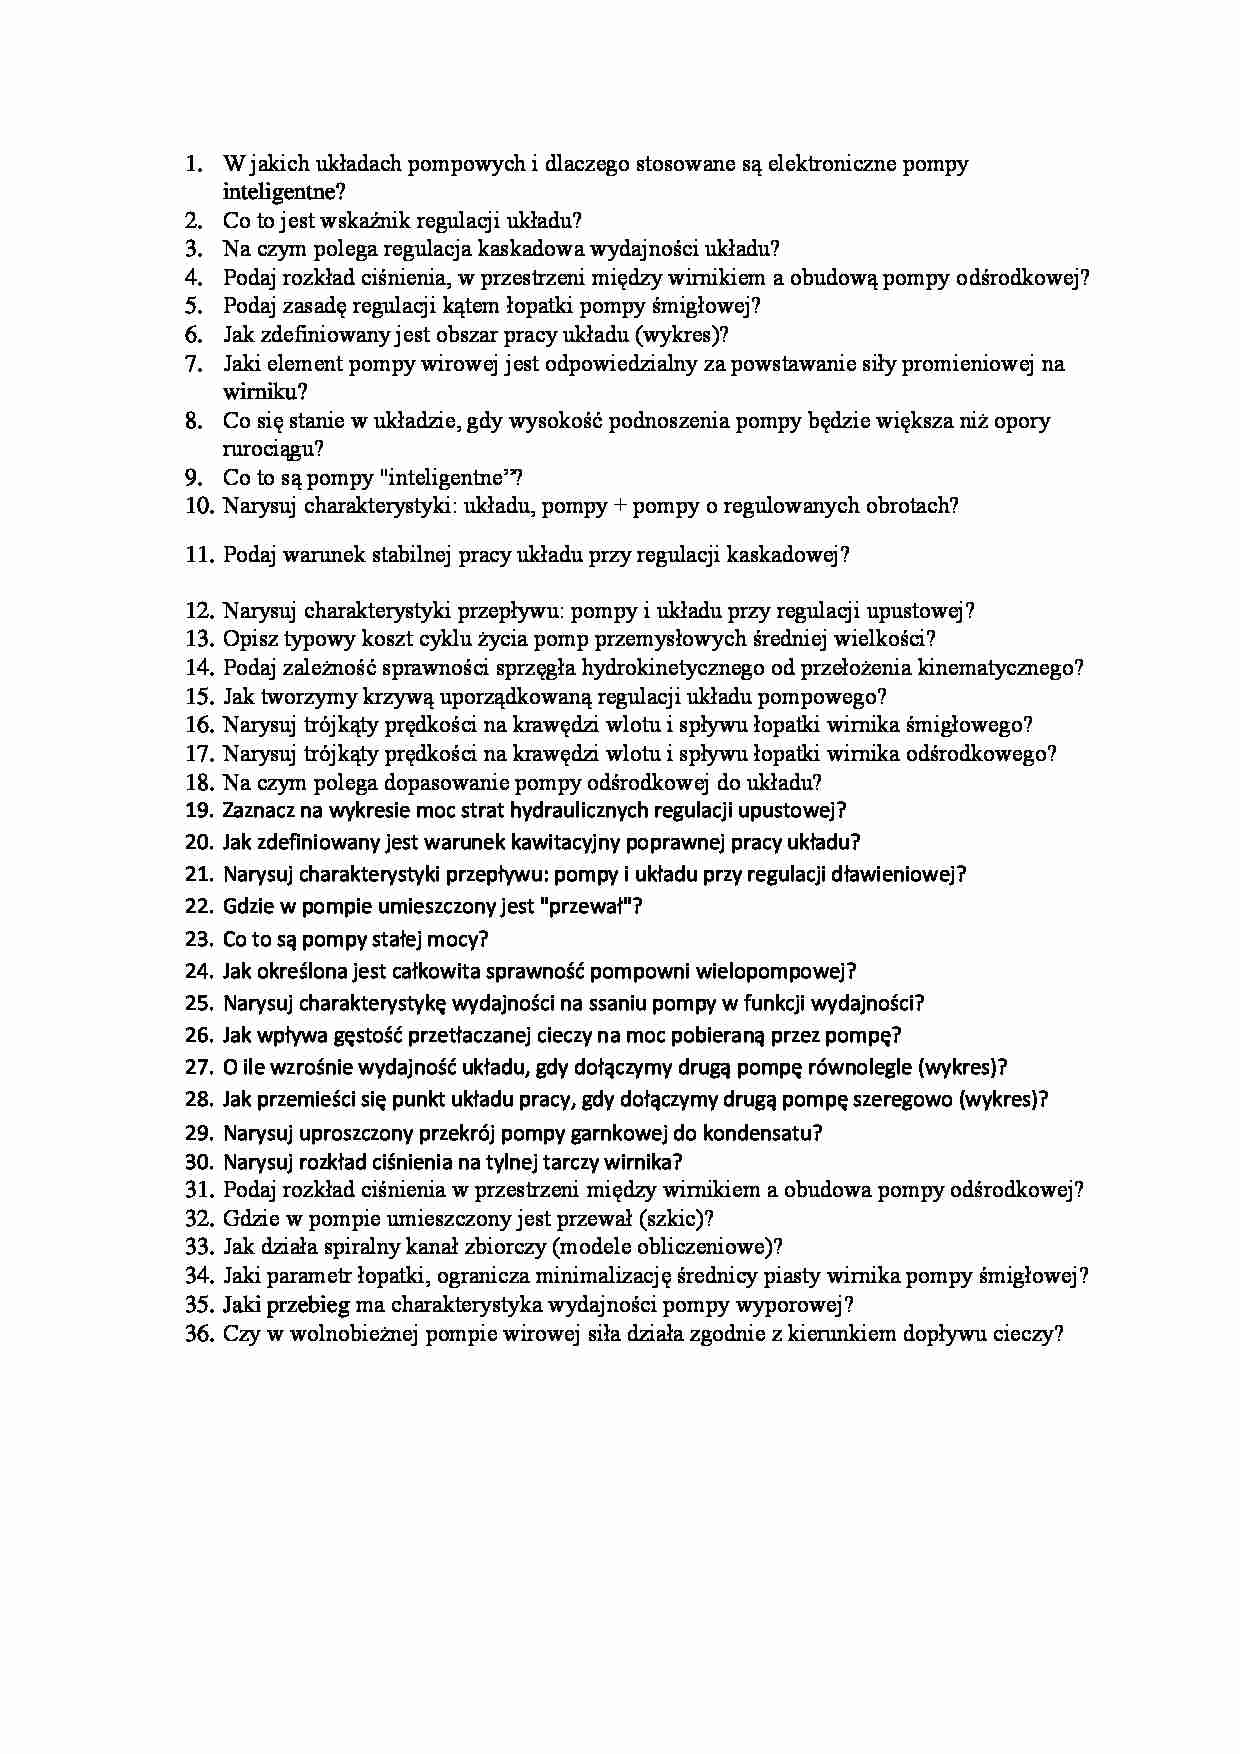 Pompownie-pytania na egzamin 2013 - strona 1